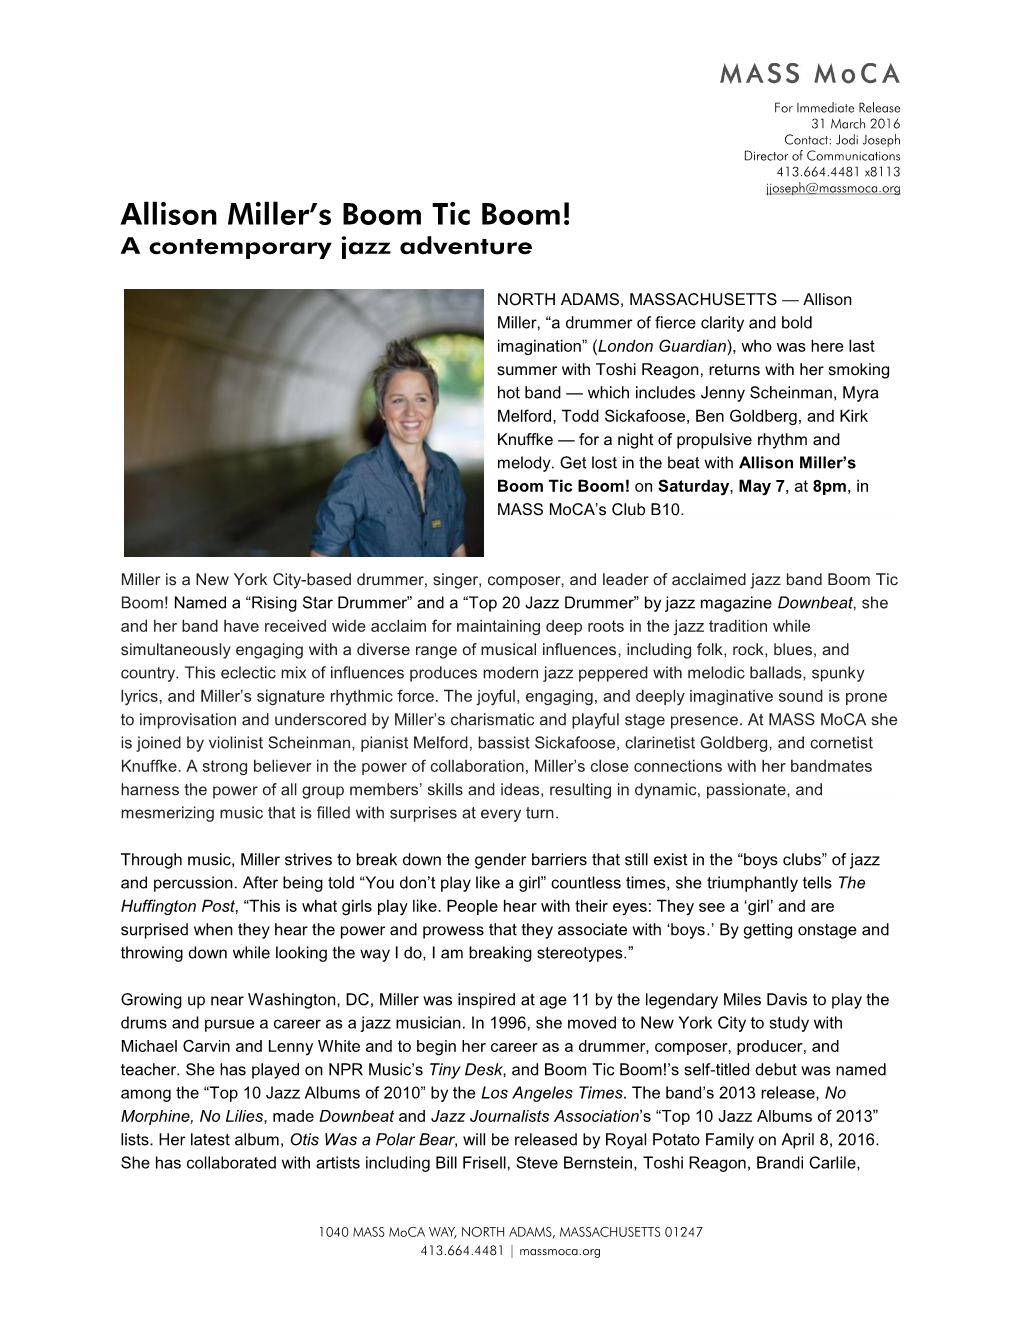 Allison Miller's Boom Tic Boom!